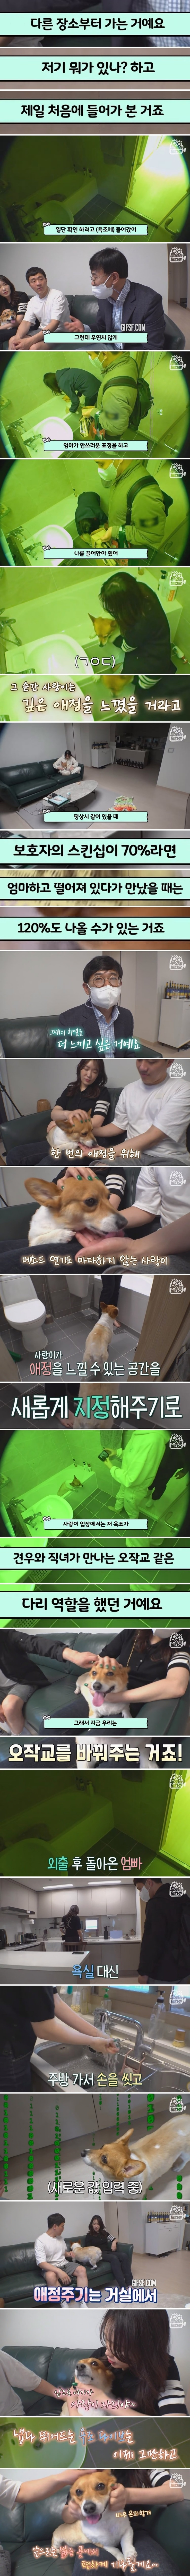 매일 욕조에 8시간 감금되는 강아지 (3).jpg